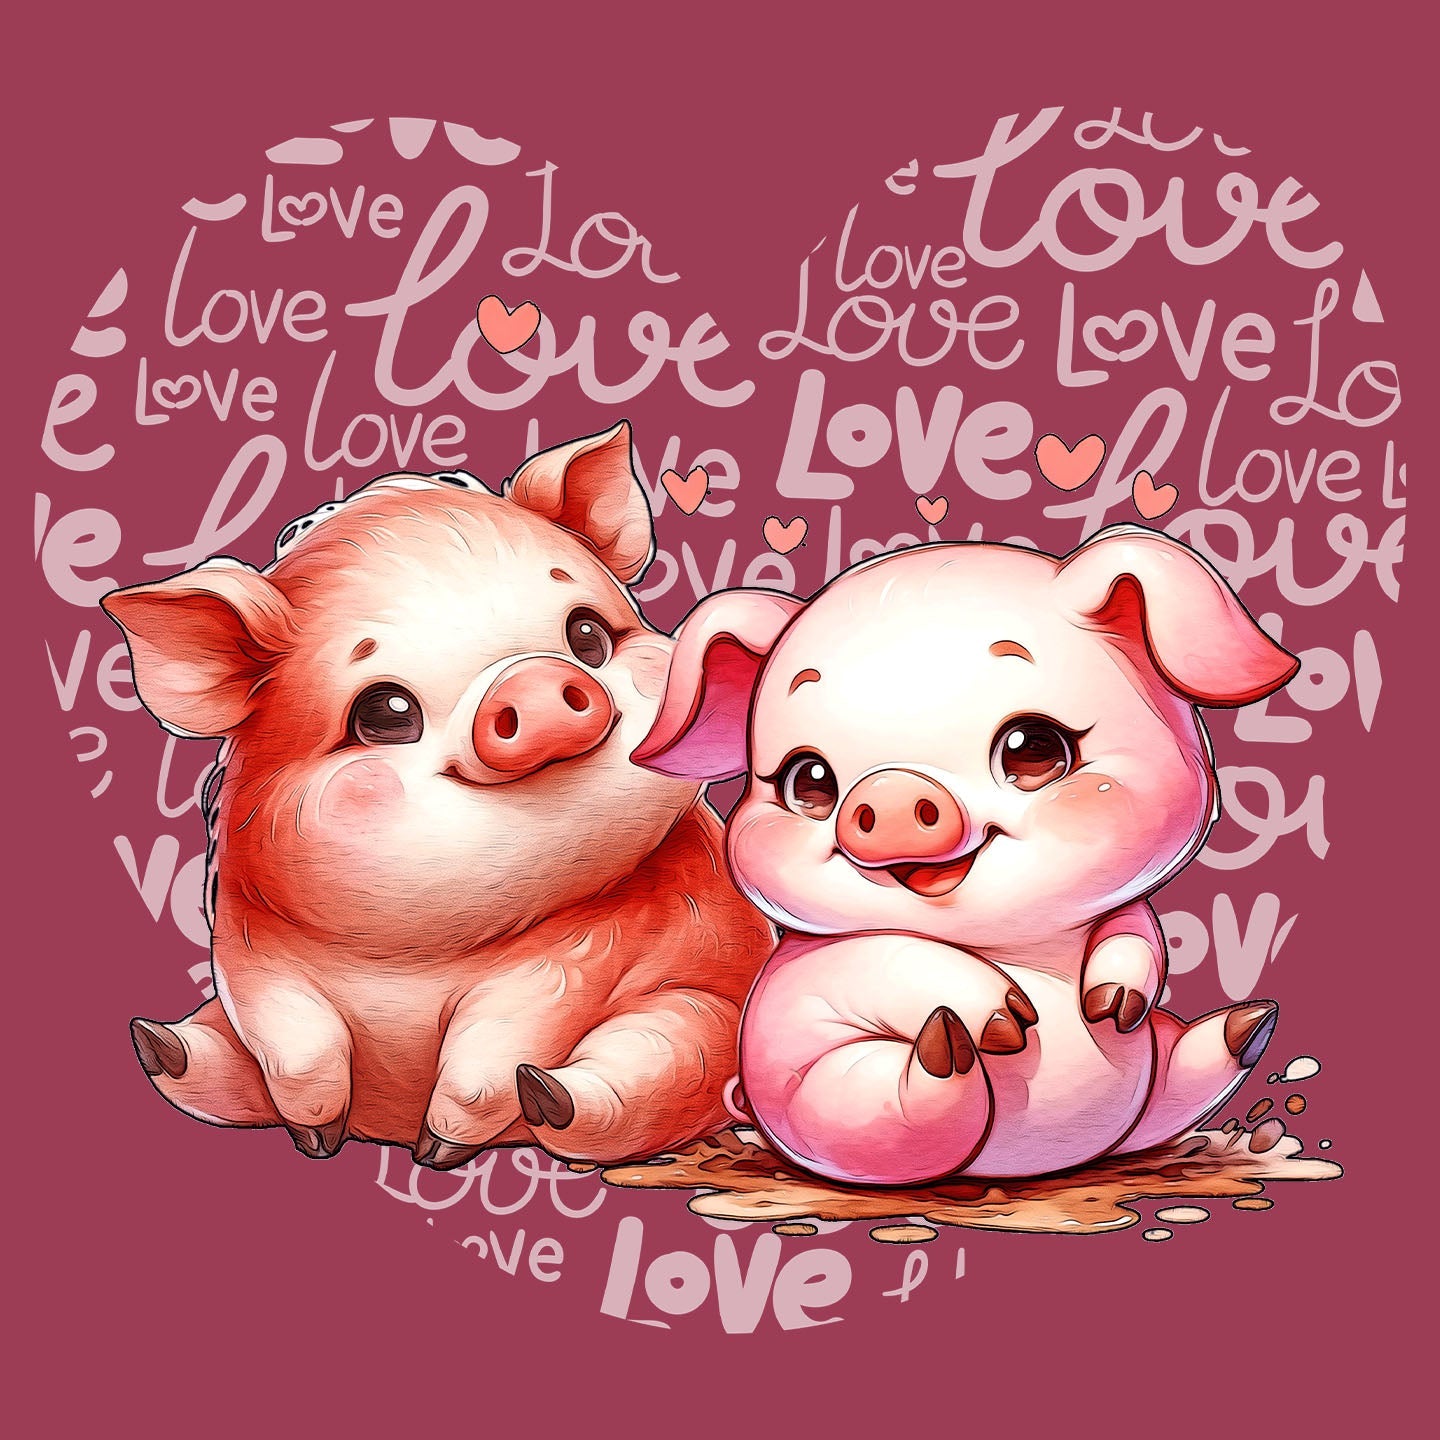 Pig Love Heart - Adult Unisex T-Shirt